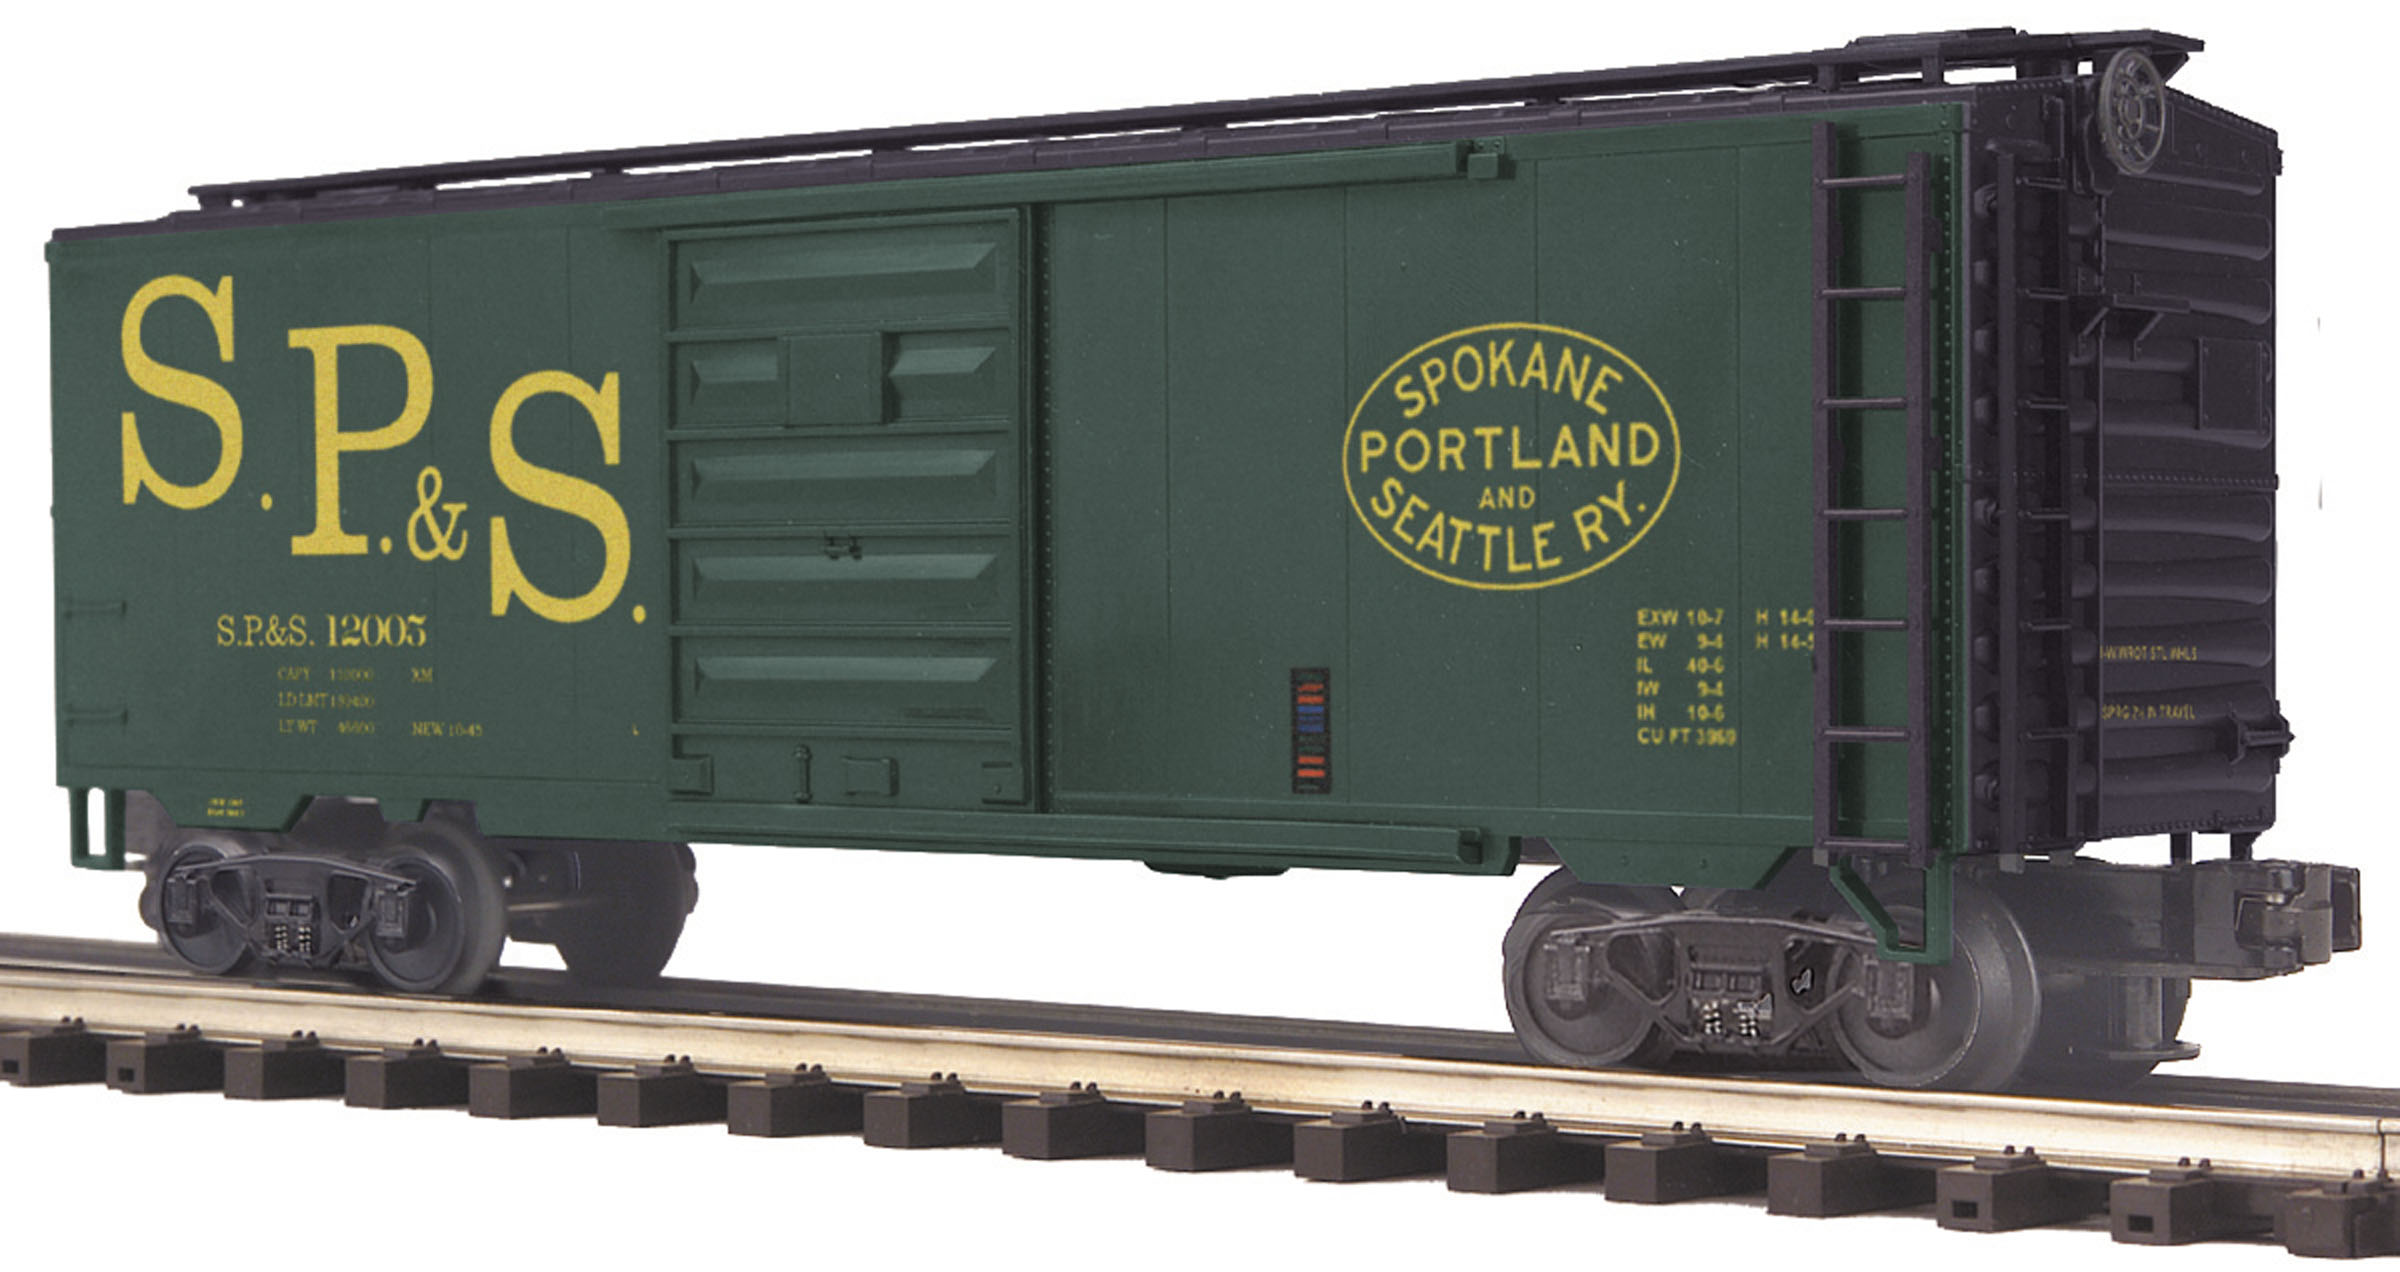 Spokane, Portland & Seattle Box Car image